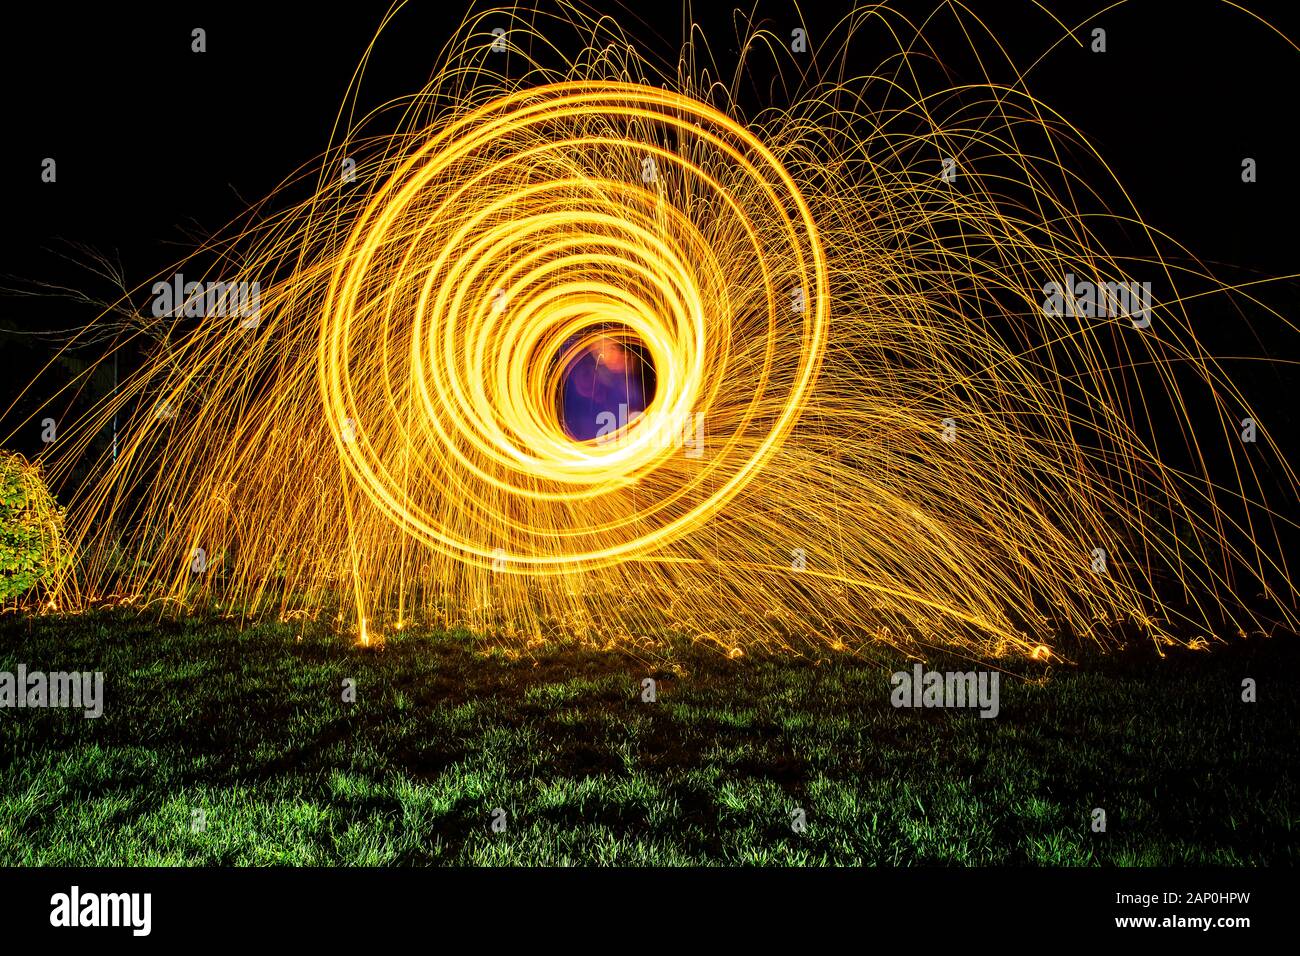 Feuerwerk, hergestellt durch Spinnen brennender Drahtwolle in einem Eiweiß. Stockfoto